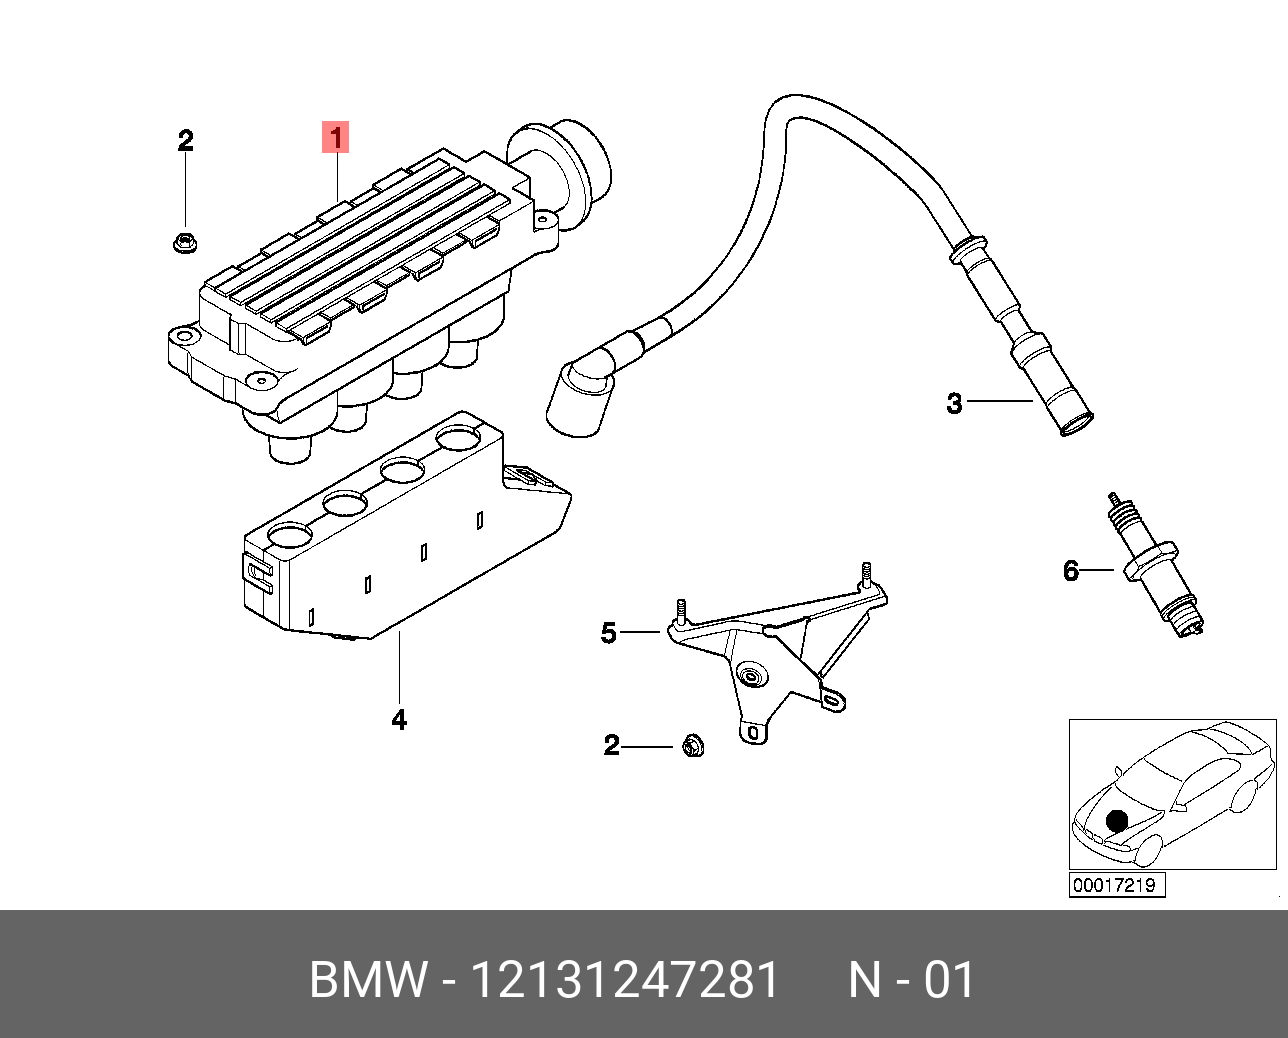 Катушка зажигания БМВ е36 м43. Провод катушки зажигания BMW e46. Катушка зажигания e36 m43. Модуль зажигания БМВ е46. Зажигания бмв е36